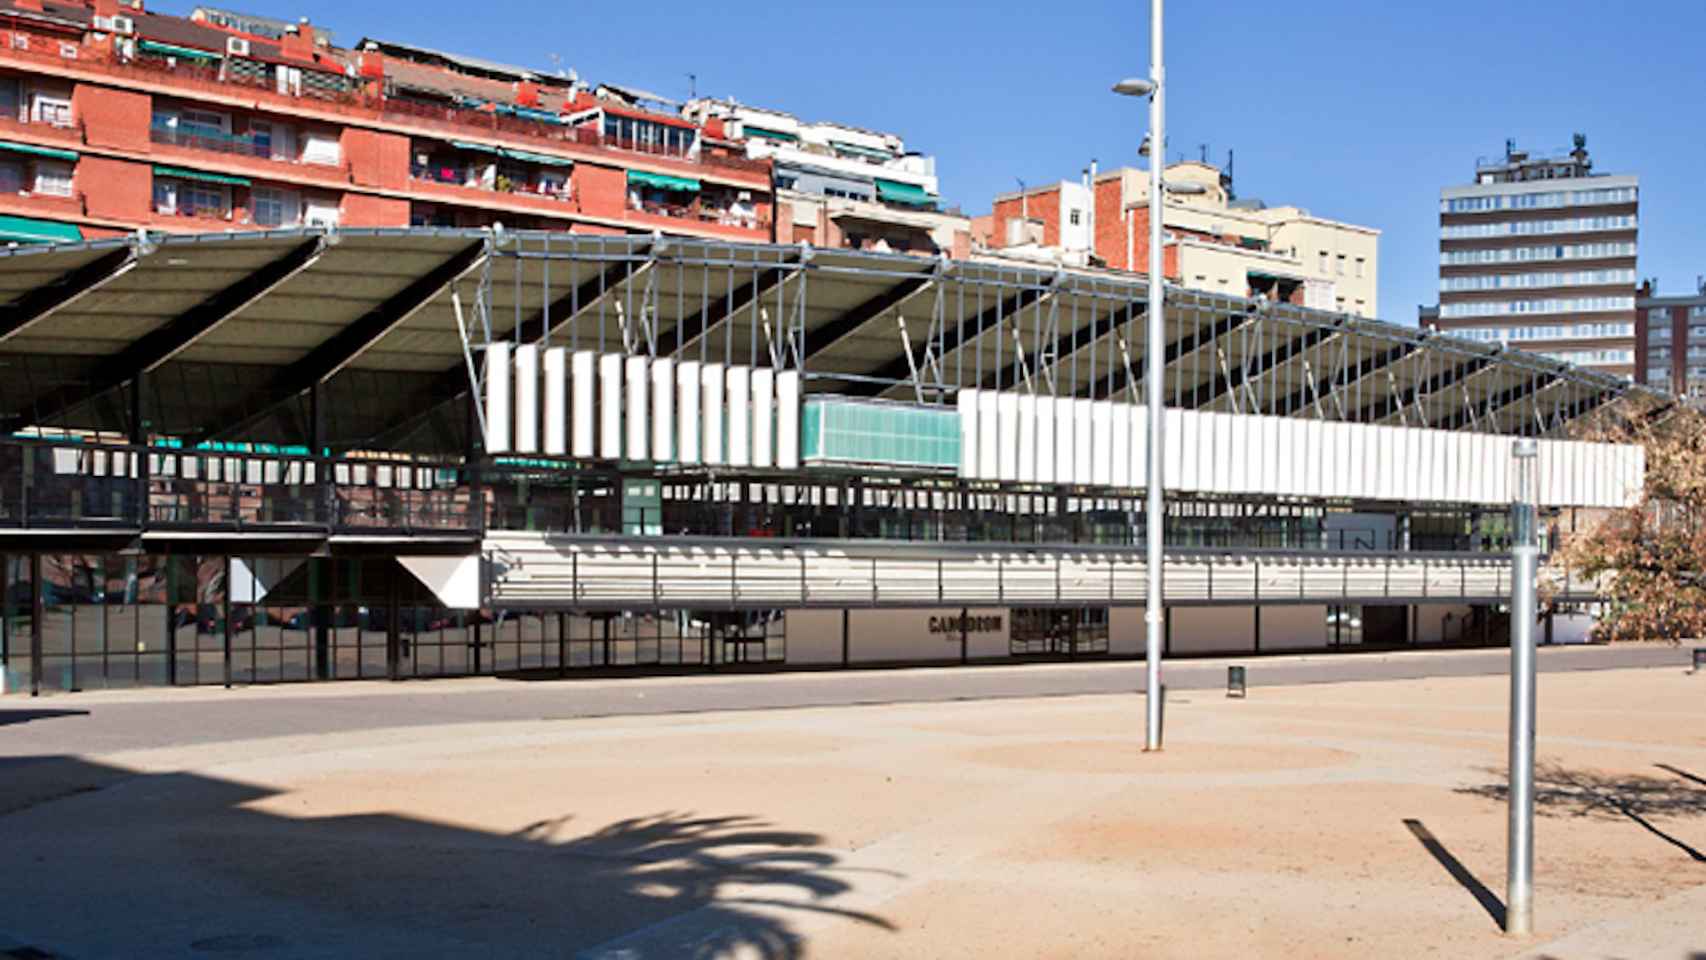 El Canòdrom, que será un ateneo de innovación digital y democrática / AYUNTAMIENTO DE BARCELONA